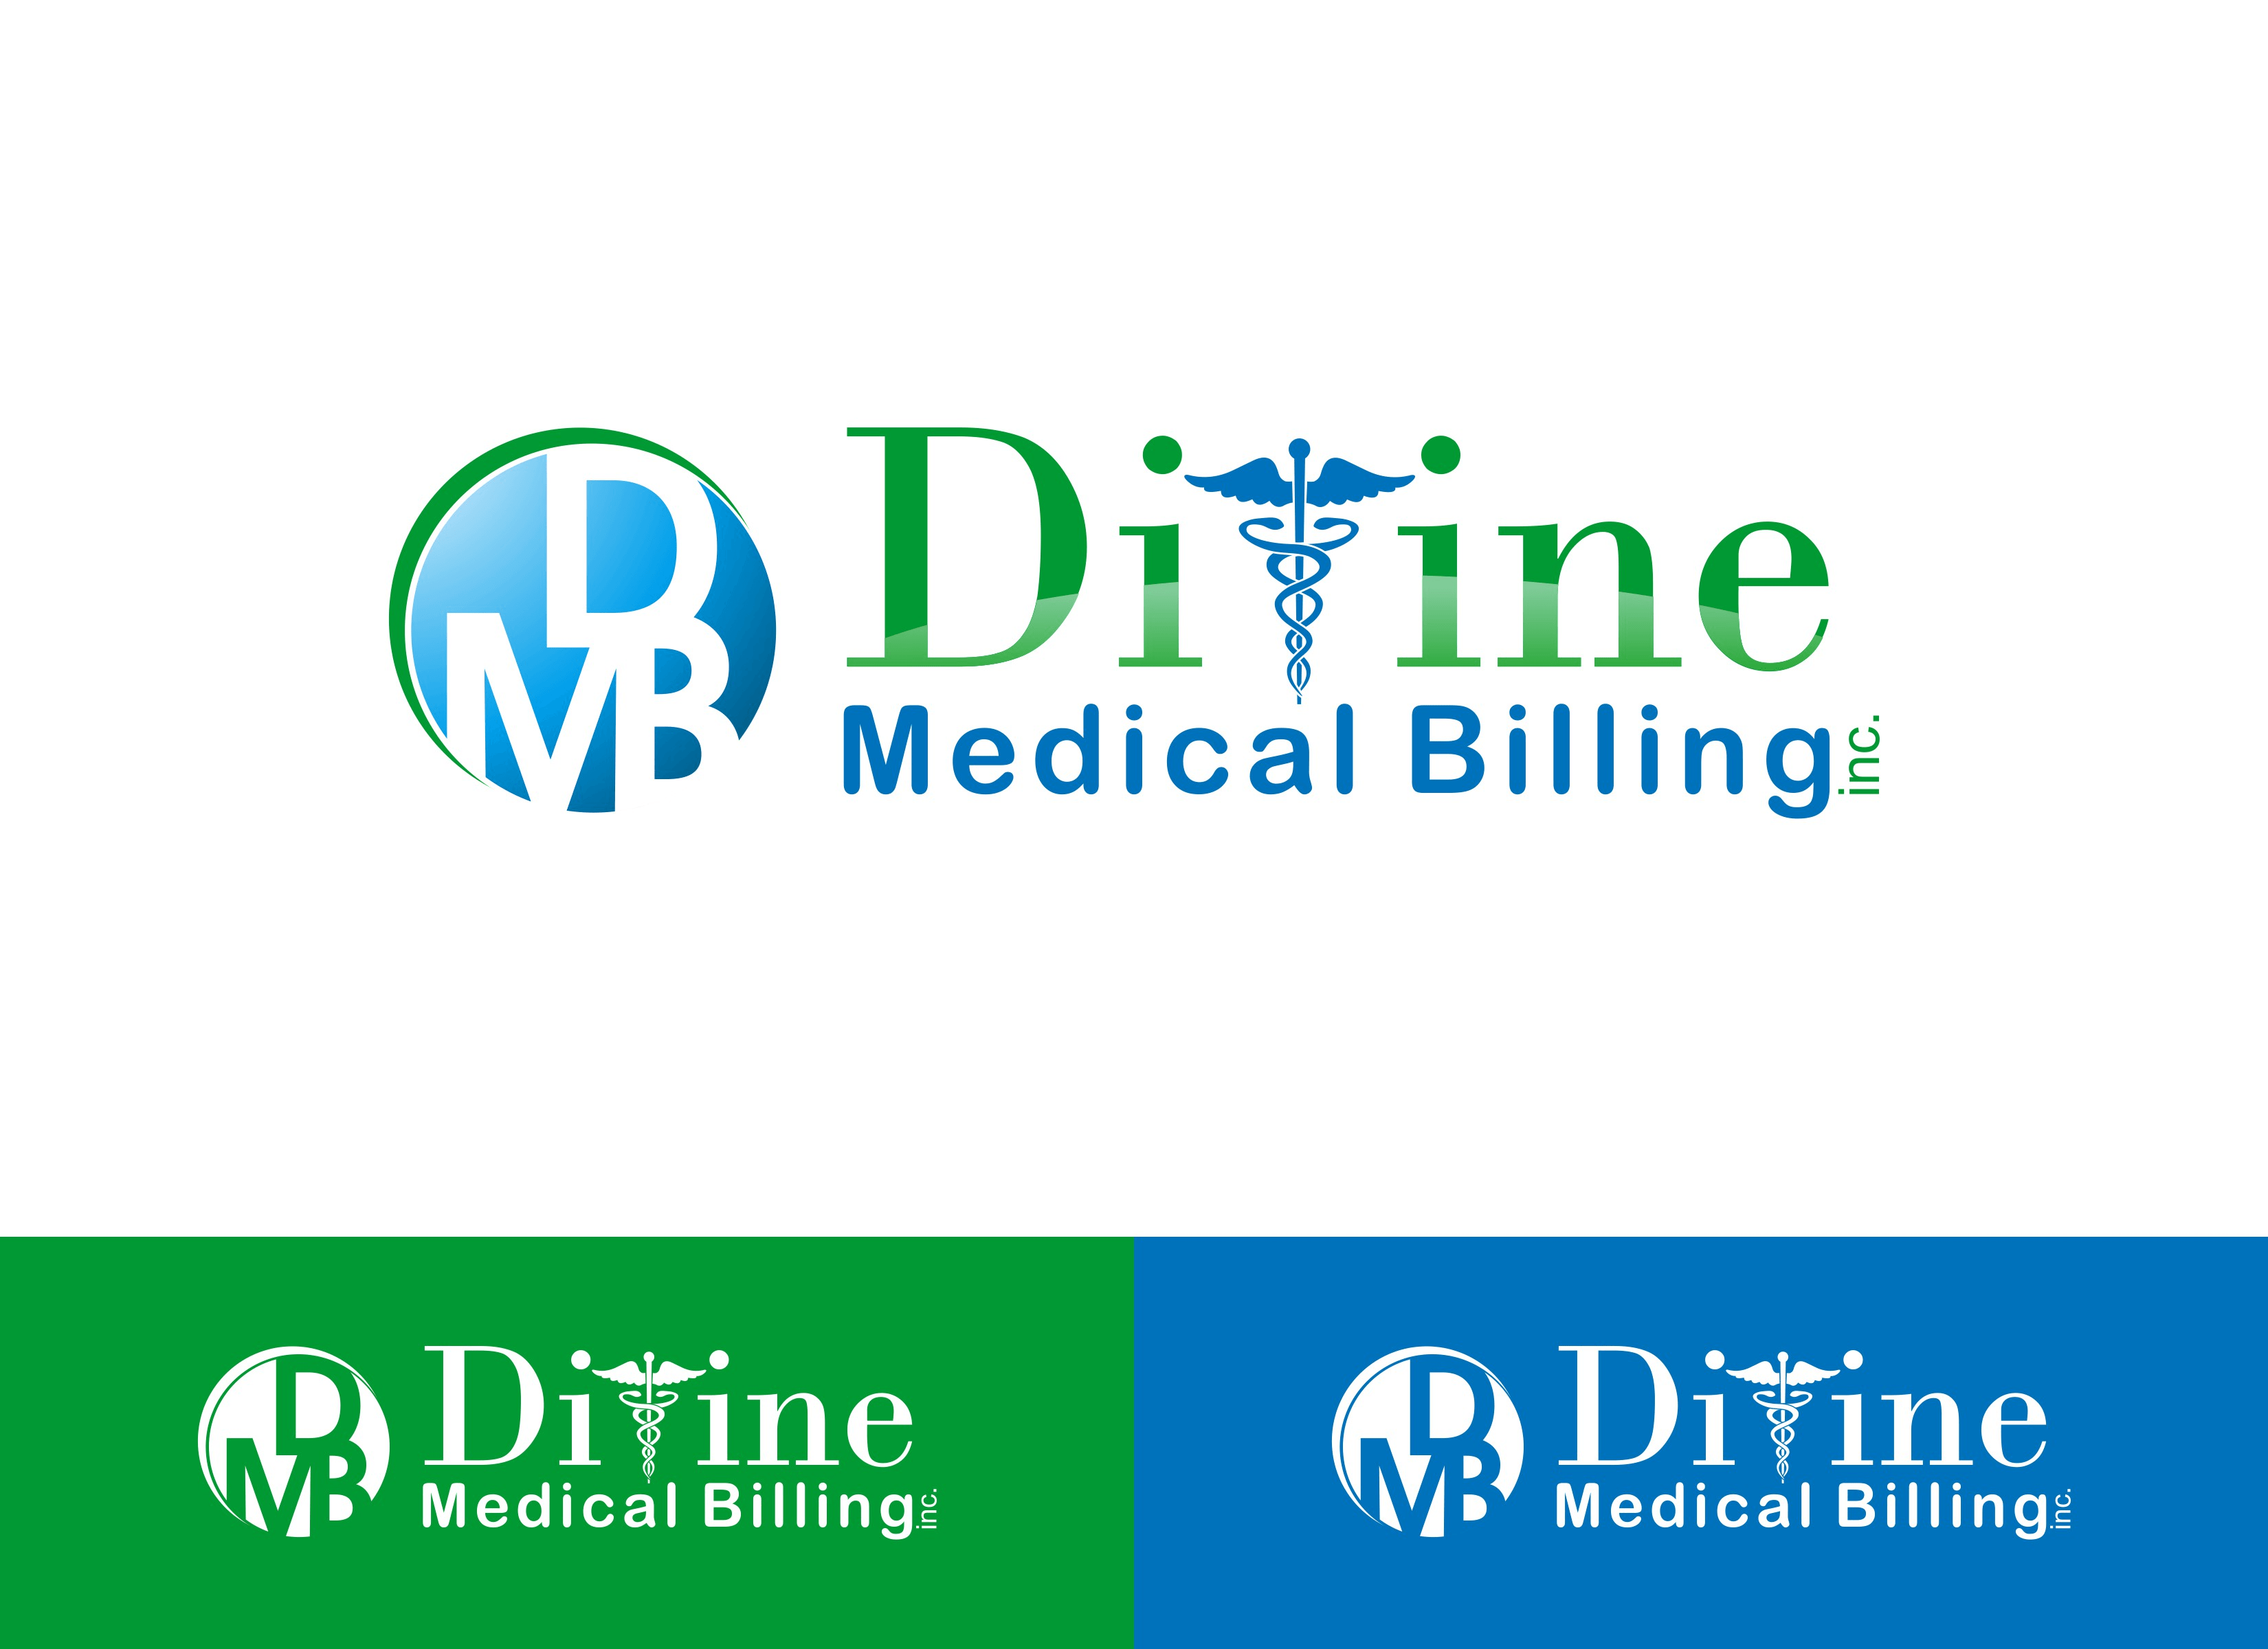 Medical Billing Logo - Logo Design Contests New Logo Design for Divine Medical Billing